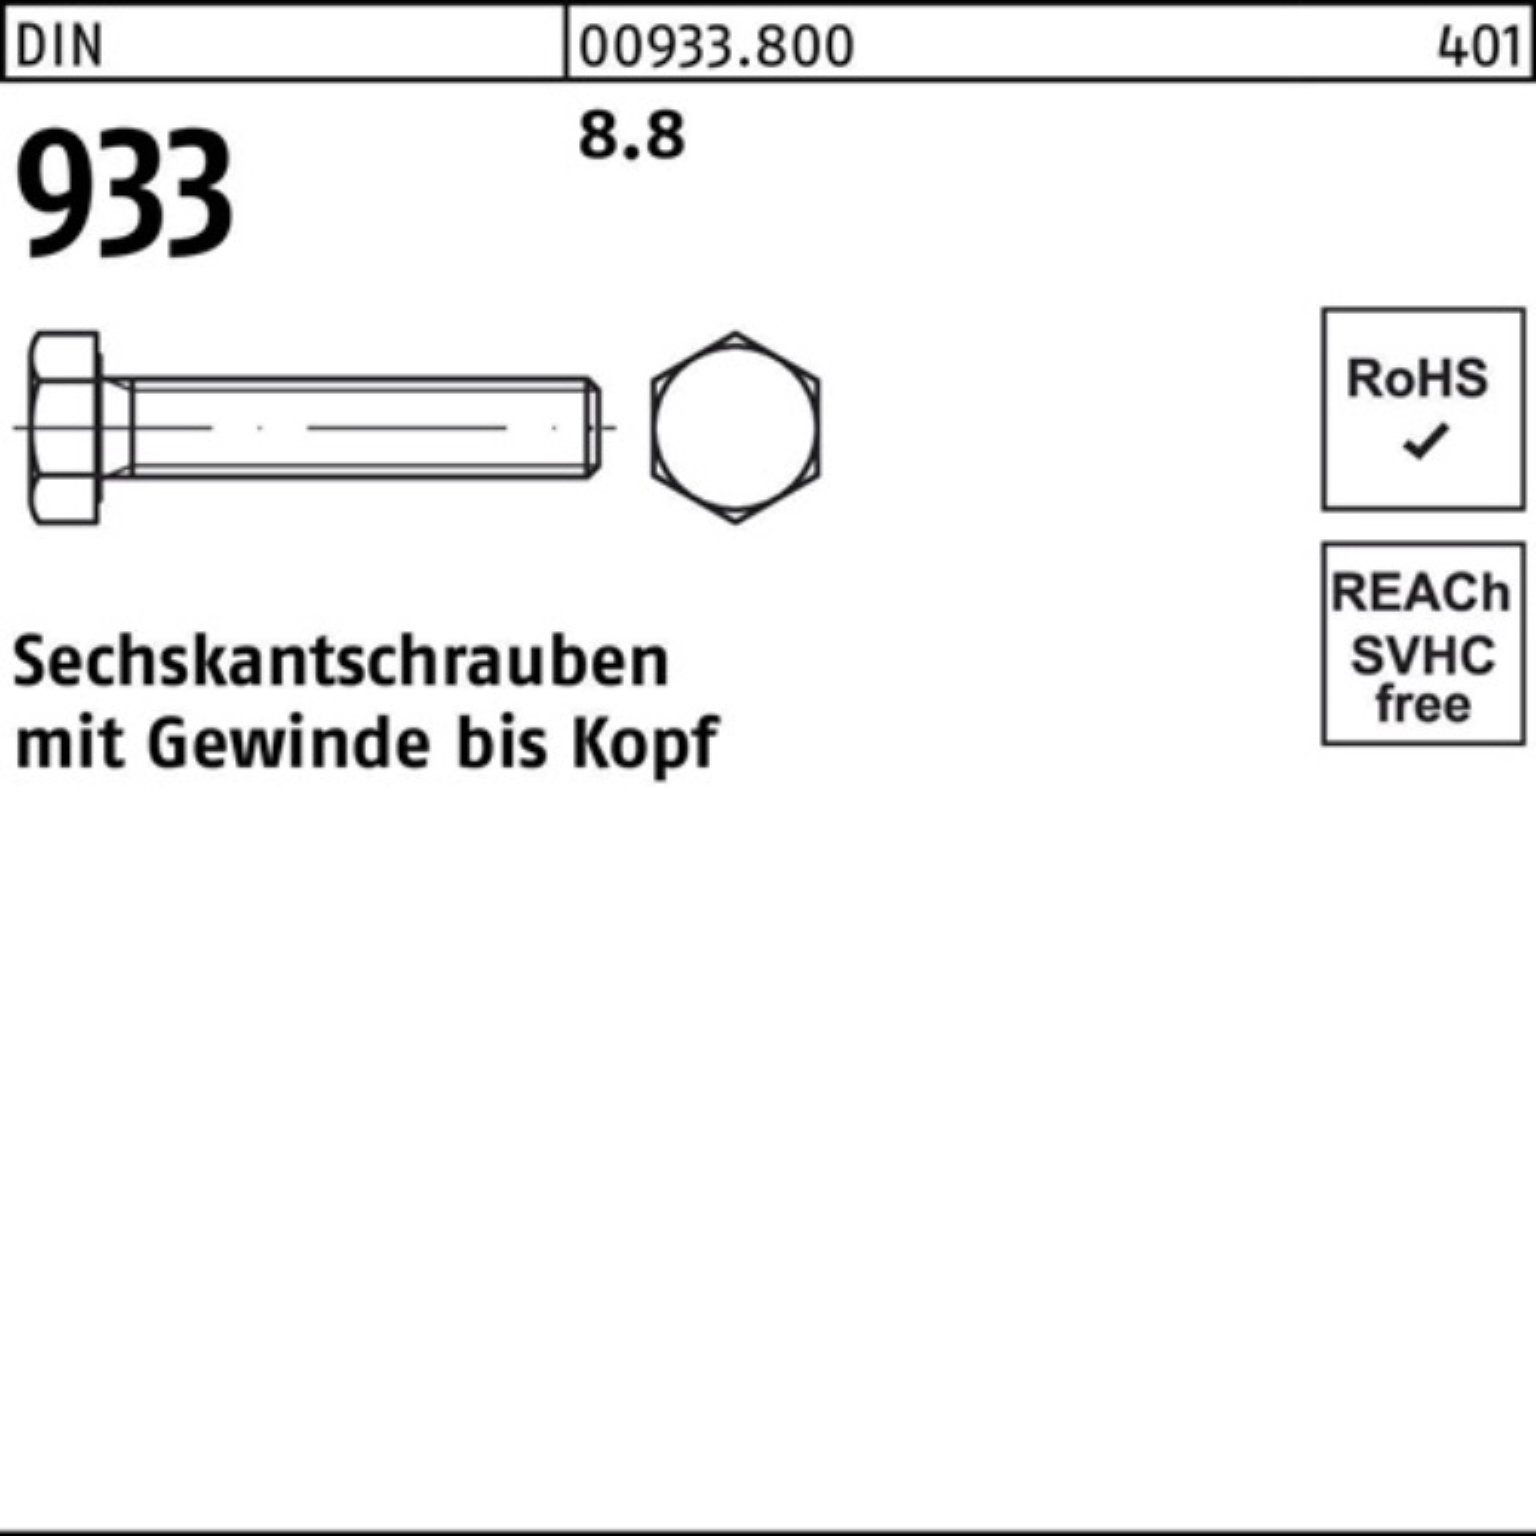 Reyher Sechskantschraube 100er 933 8.8 8 DIN 933 100 VG Stück DIN M4x Pack Sechskantschraube 8